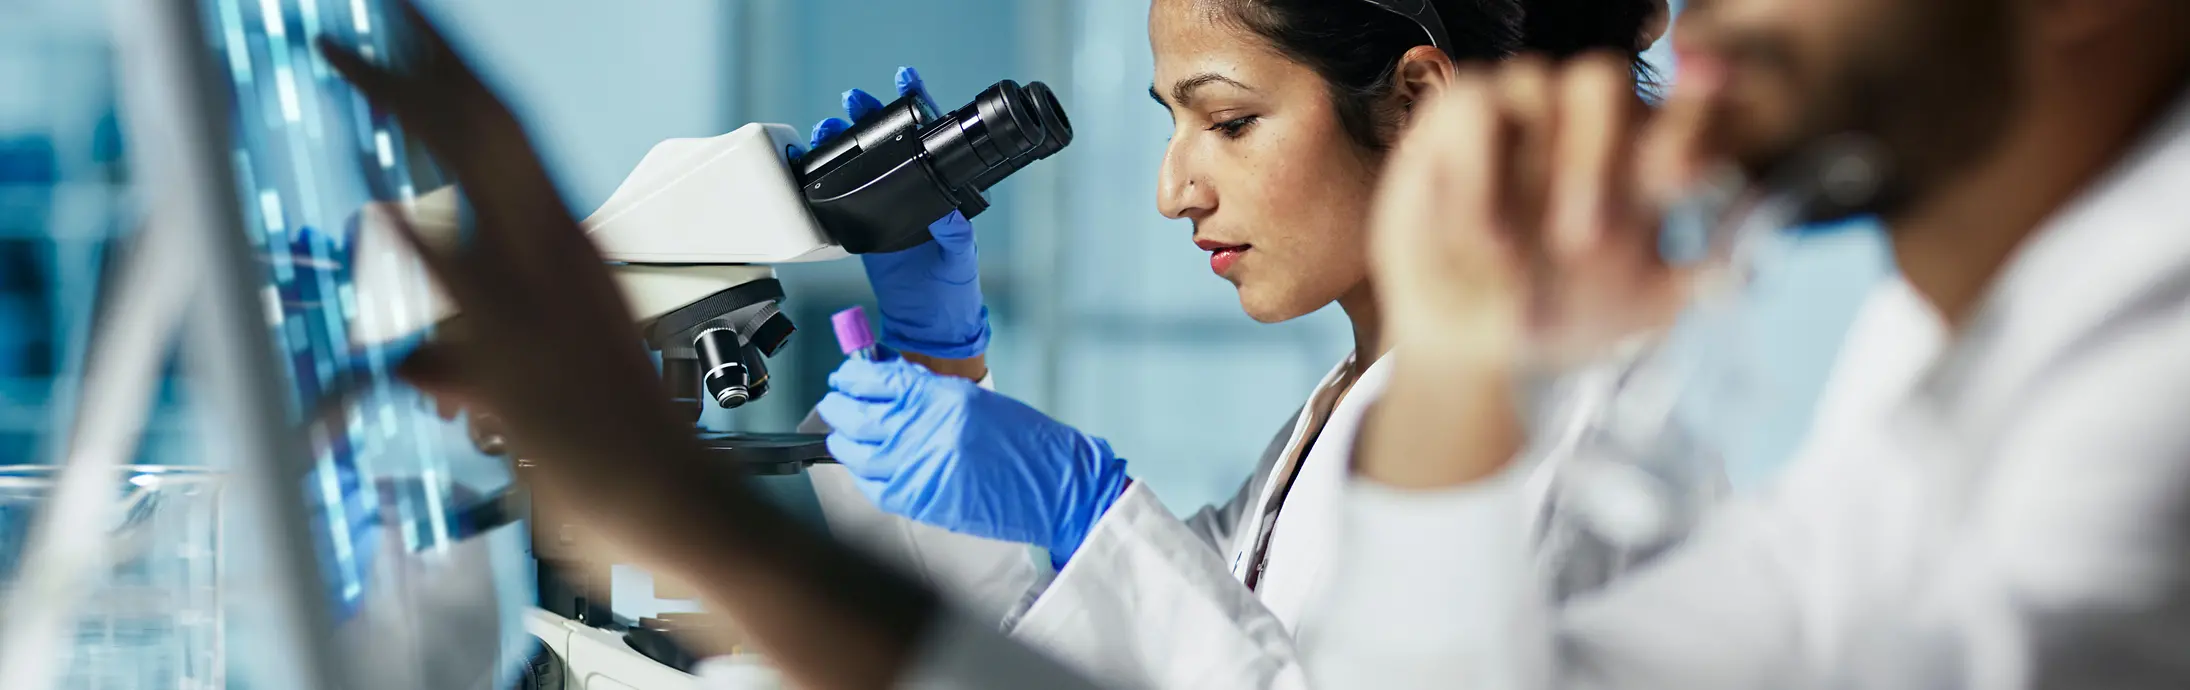 egy laboratóriumban egy nő ül egy mikroszkóp előtt, amint egy mintát vizsgál, elöl pedig egy szakállas férfi nézi a képernyőt.